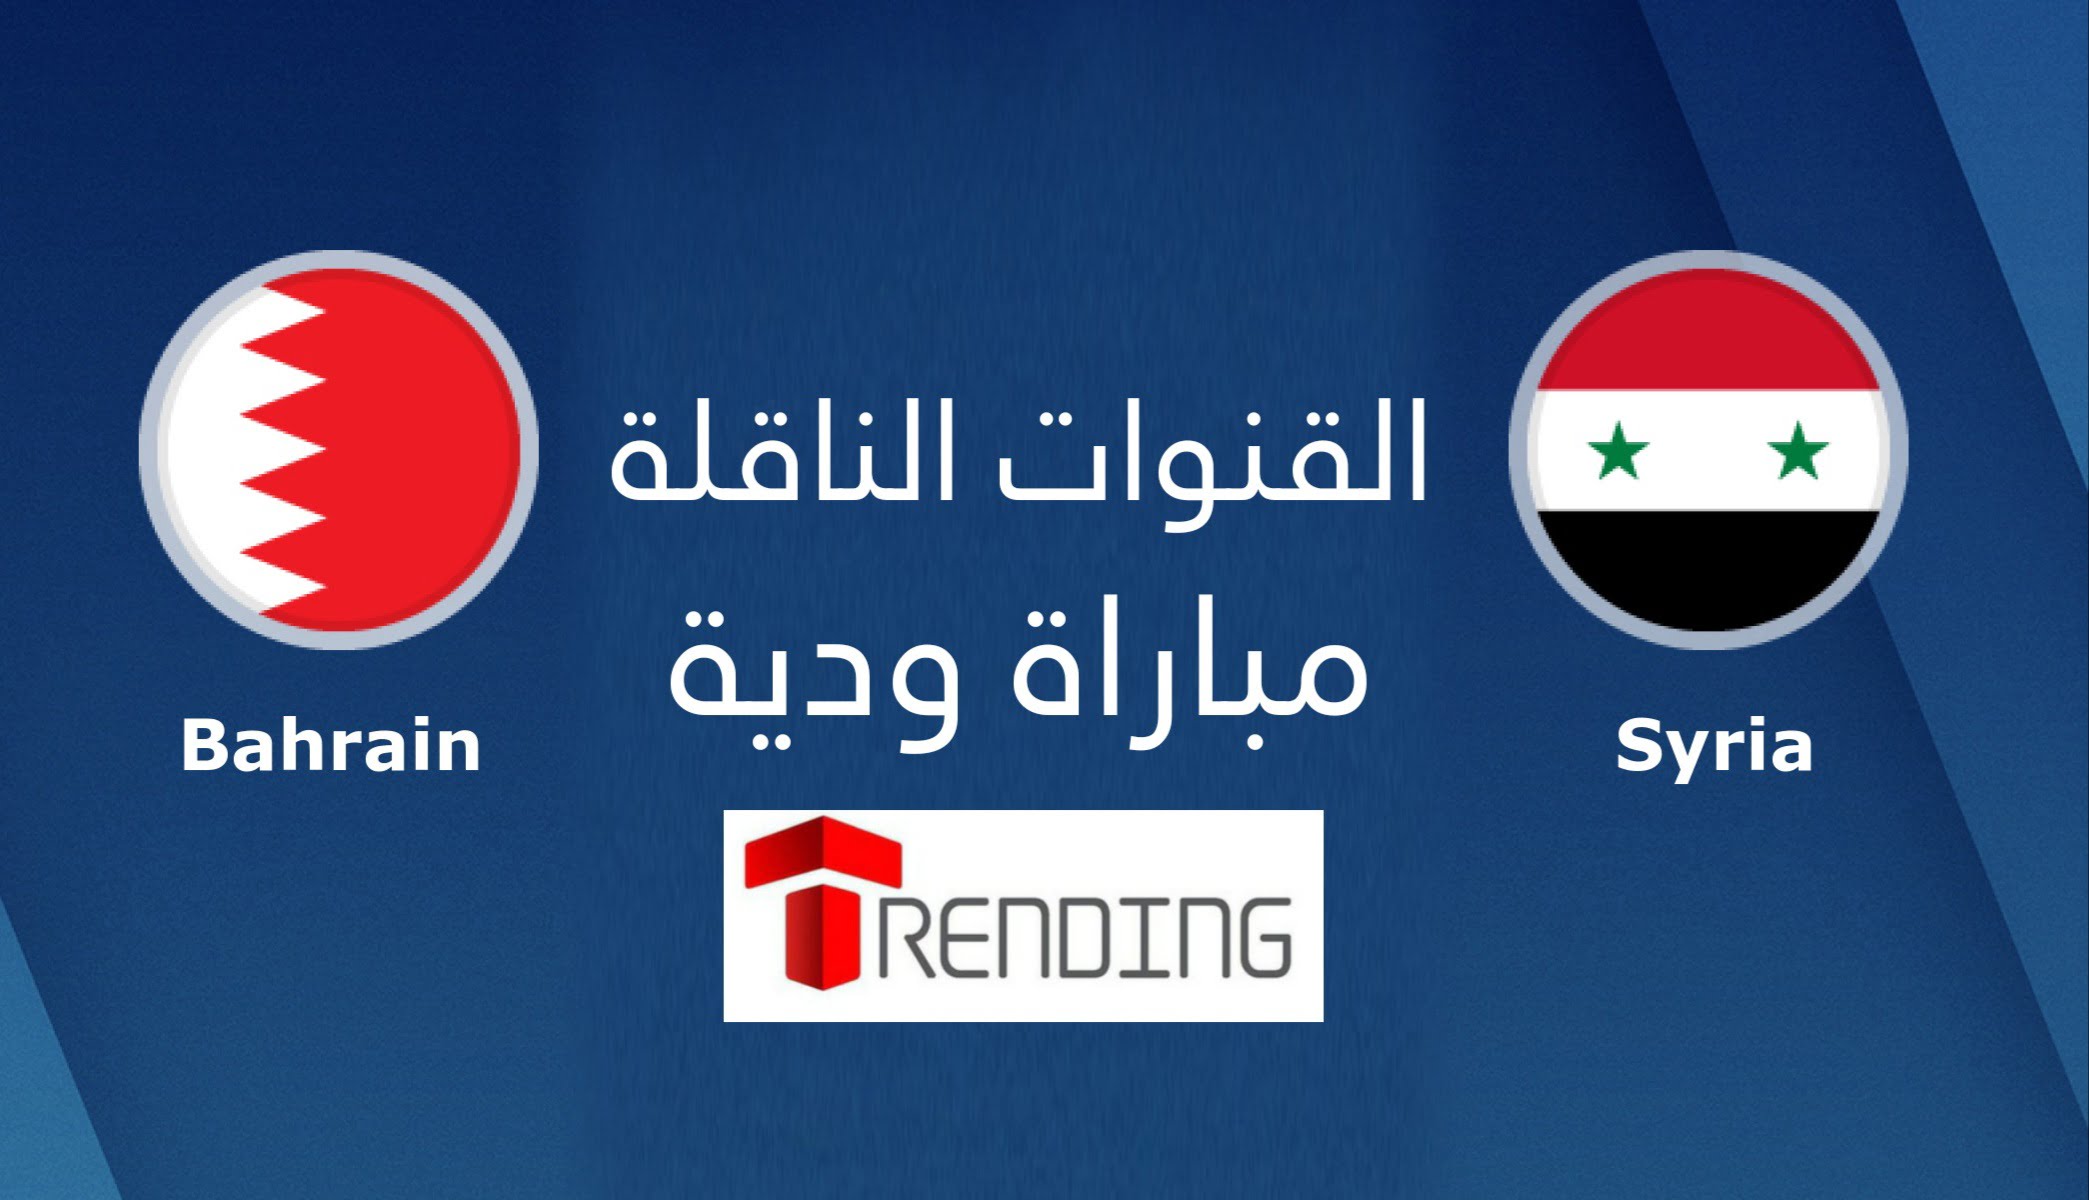 سوريا و البحرين